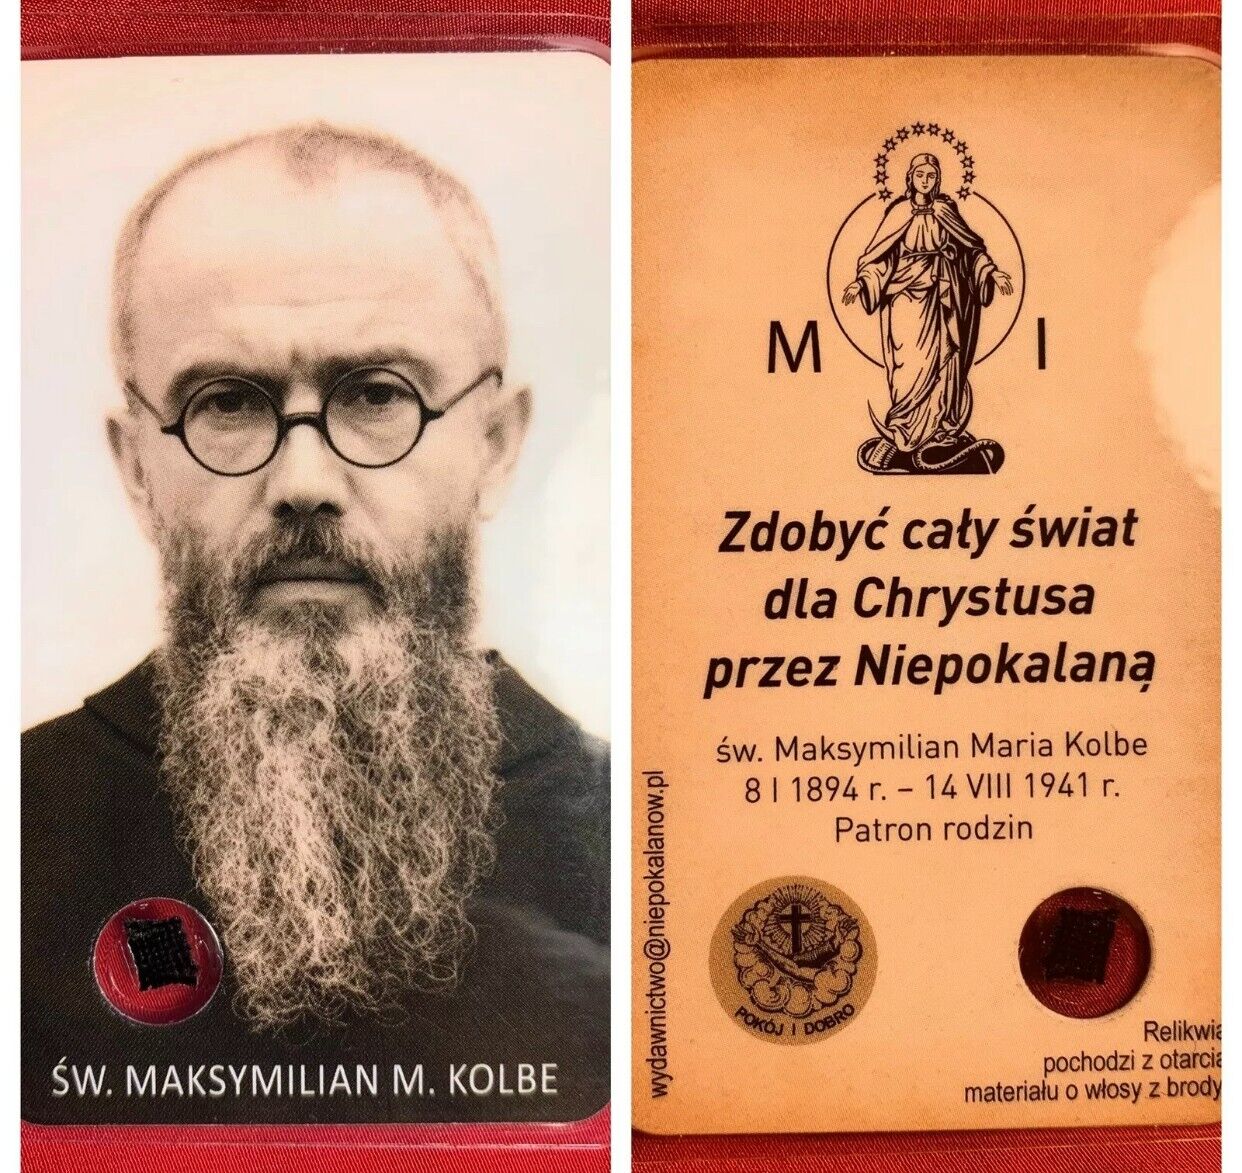 St. Maximilian Maria Kolbe Relic Card of Saint - Genuine and Rare